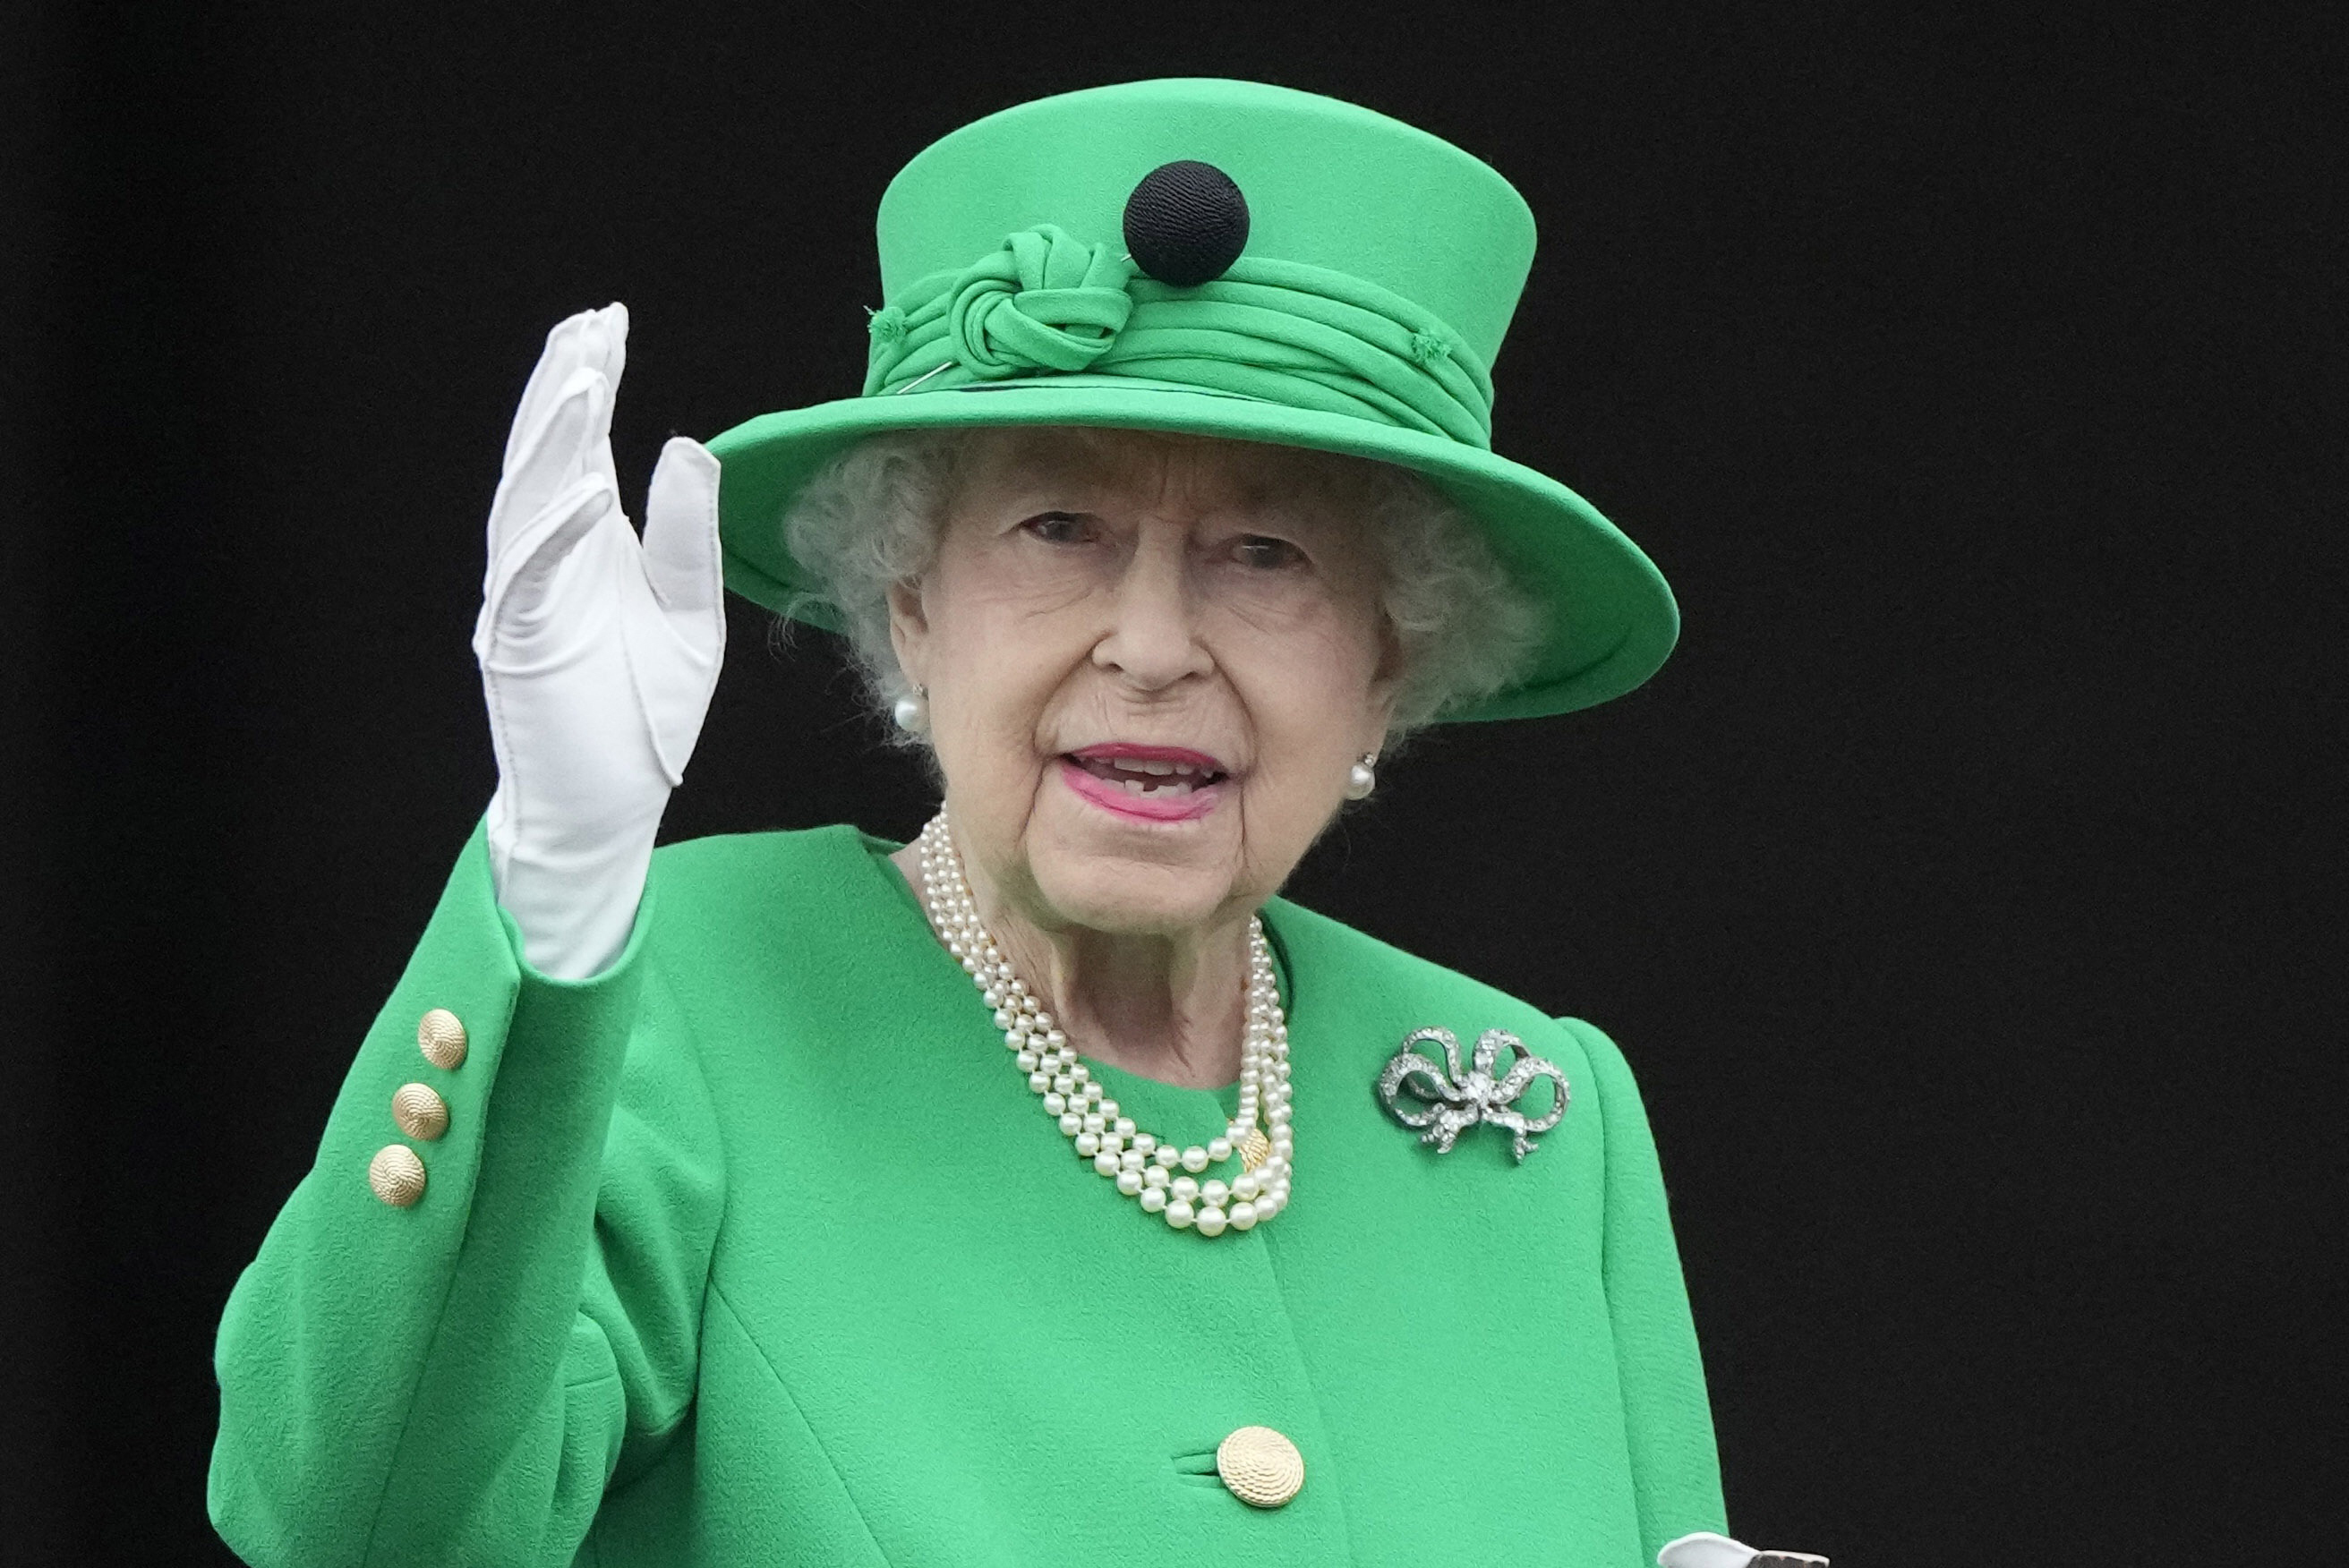 La reine Elizabeth II saluant la foule lors des célébrations de son jubilé de platine, le 5 juin 2022. Crédit photo : Frank Augstein / POOL / AFP